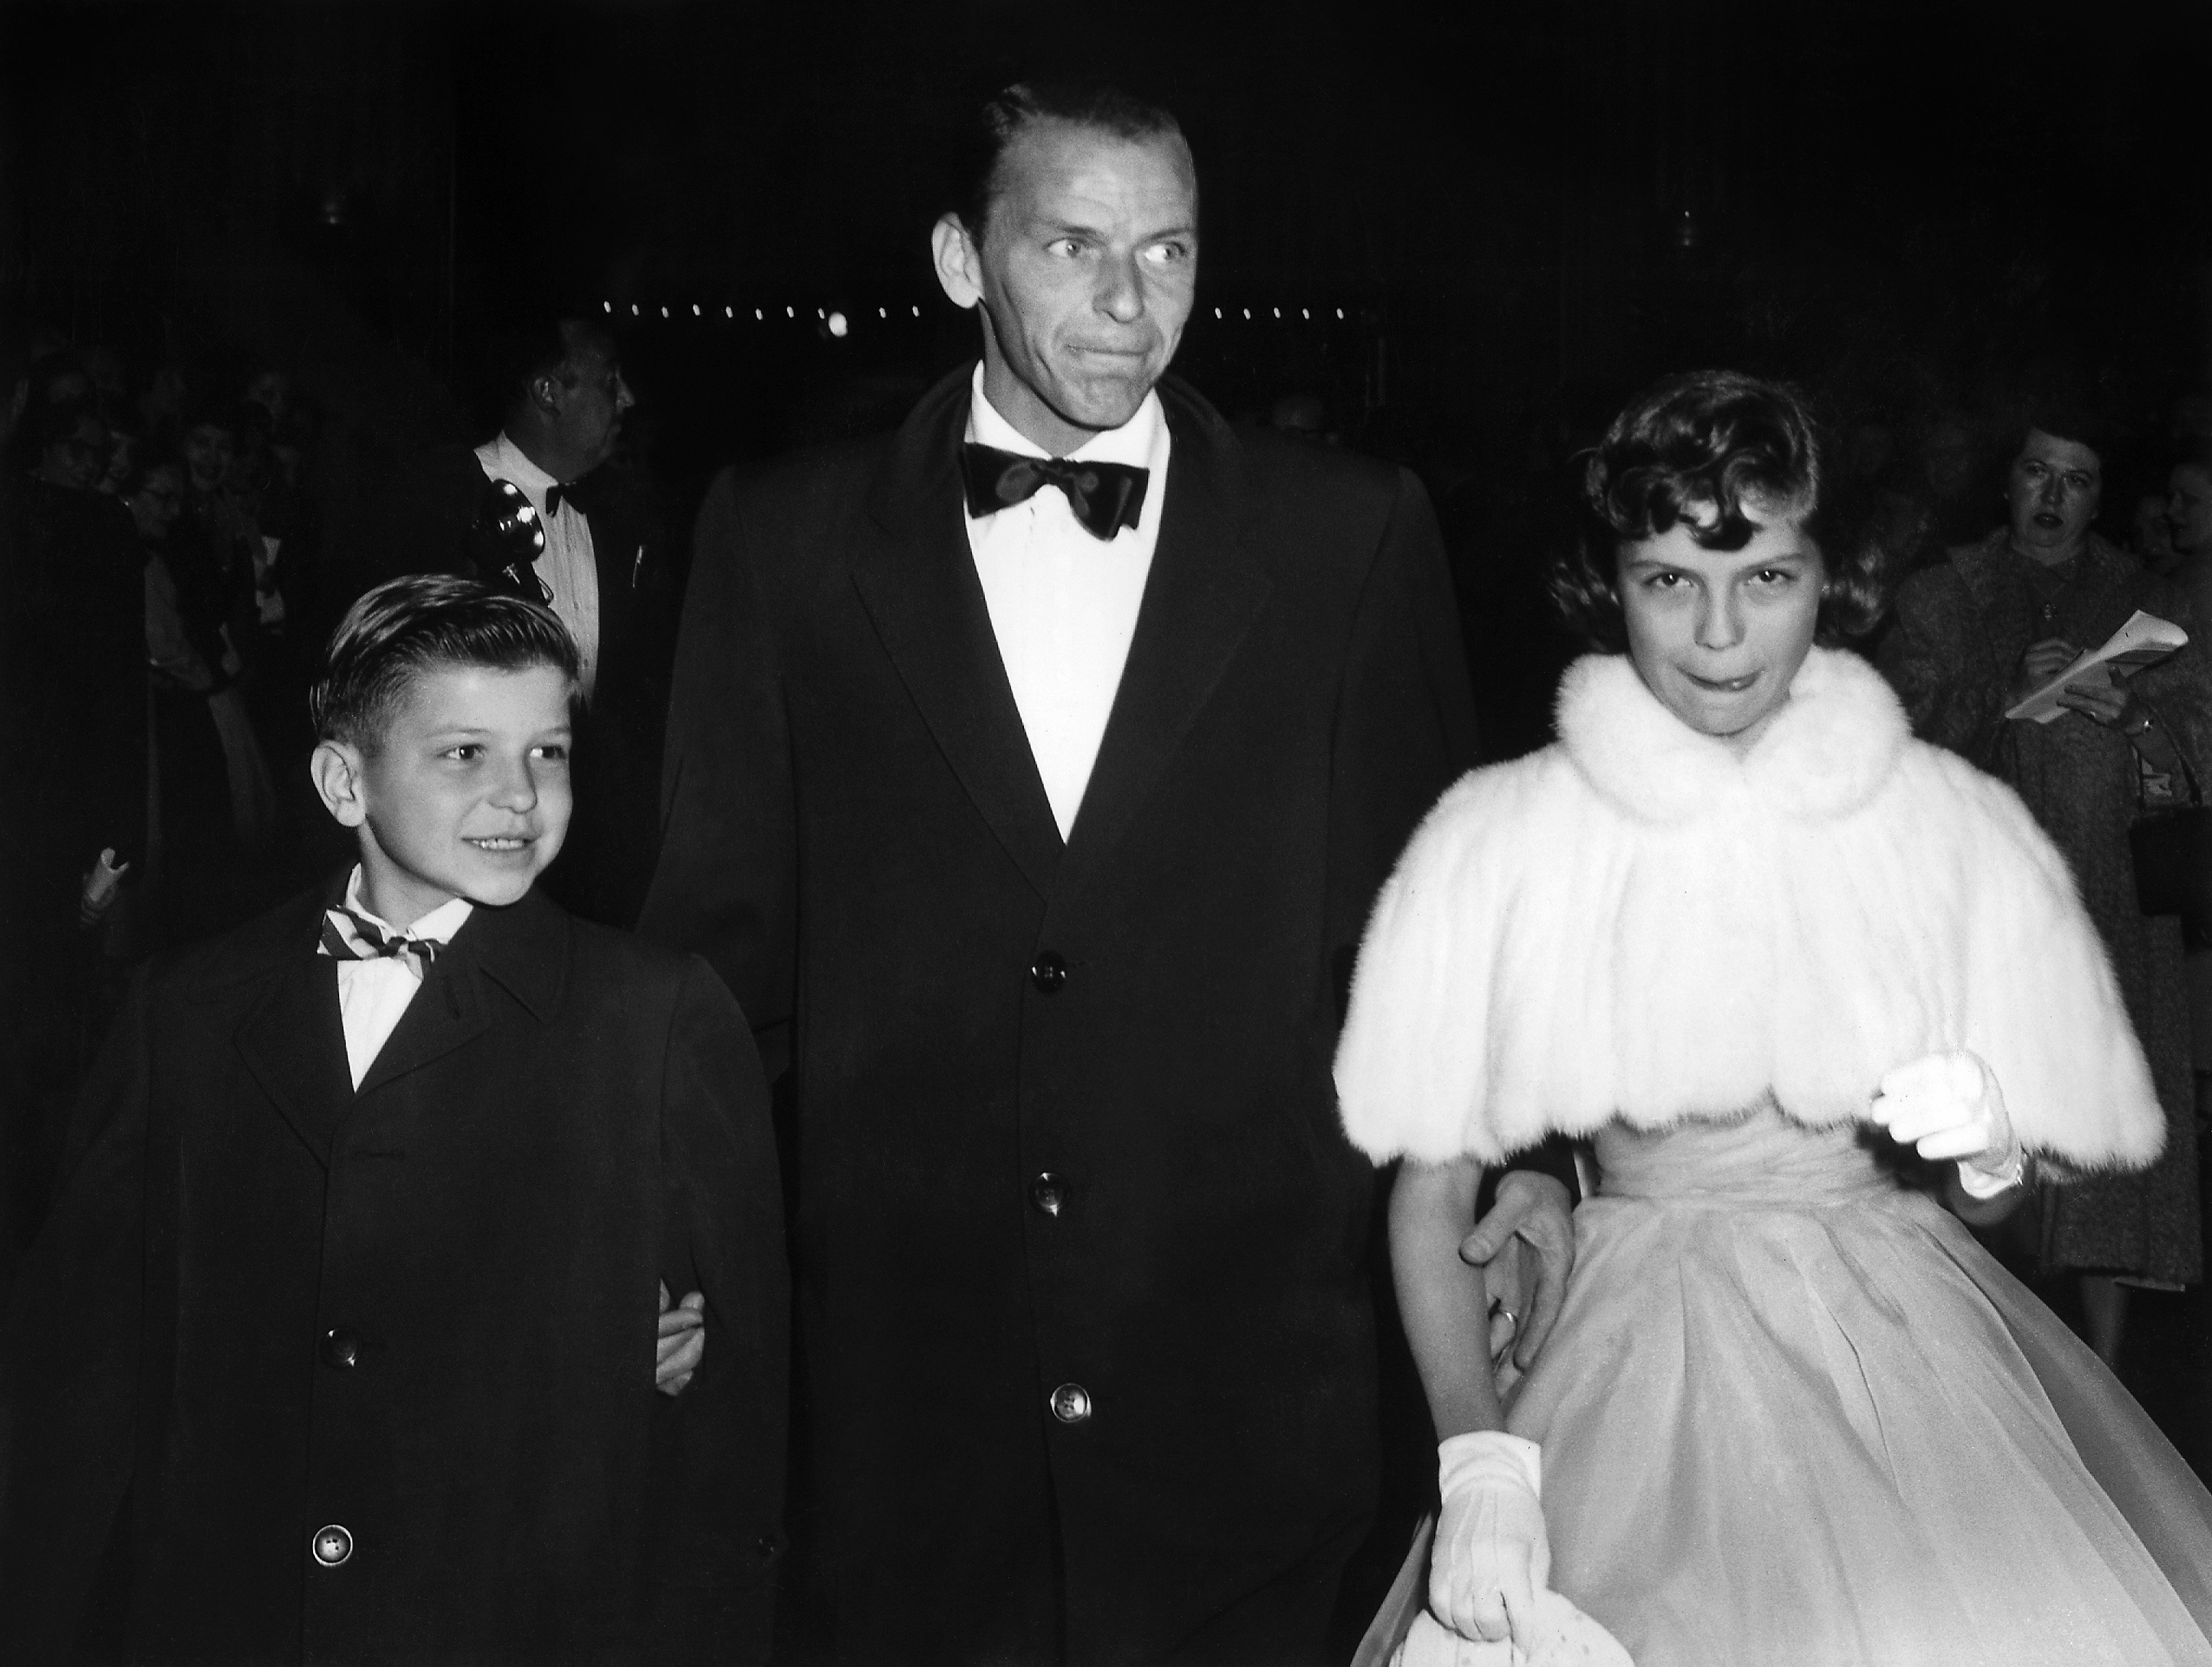 Фрэнк Синатра со своими детьми Фрэнком младшим и Нэнси в Голливуде, 1954 год